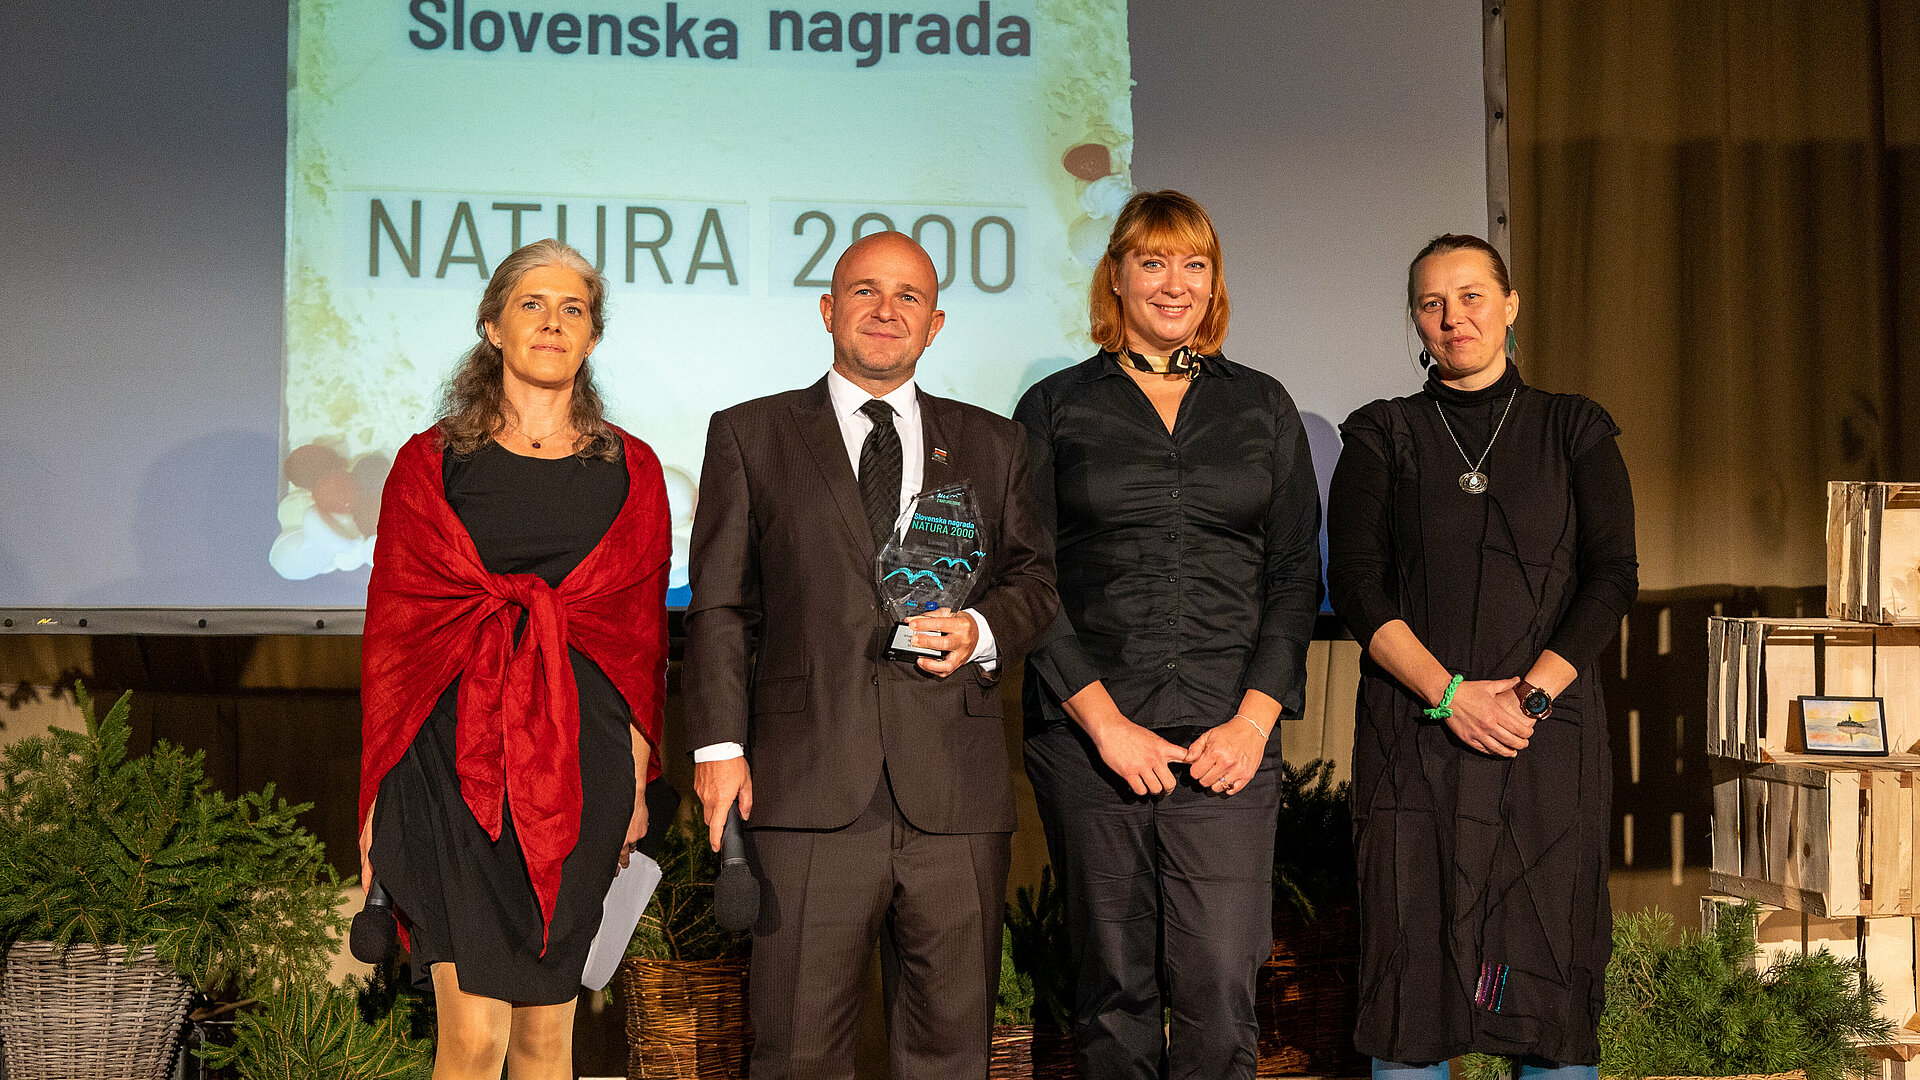 Javni zavod Triglavski narodni park, zmagovalec prve slovenske nagrade Natura 2000 v kategoriji "Komunikacijske akcije za območja Nature 2000" (foto: Zavod Štirna)